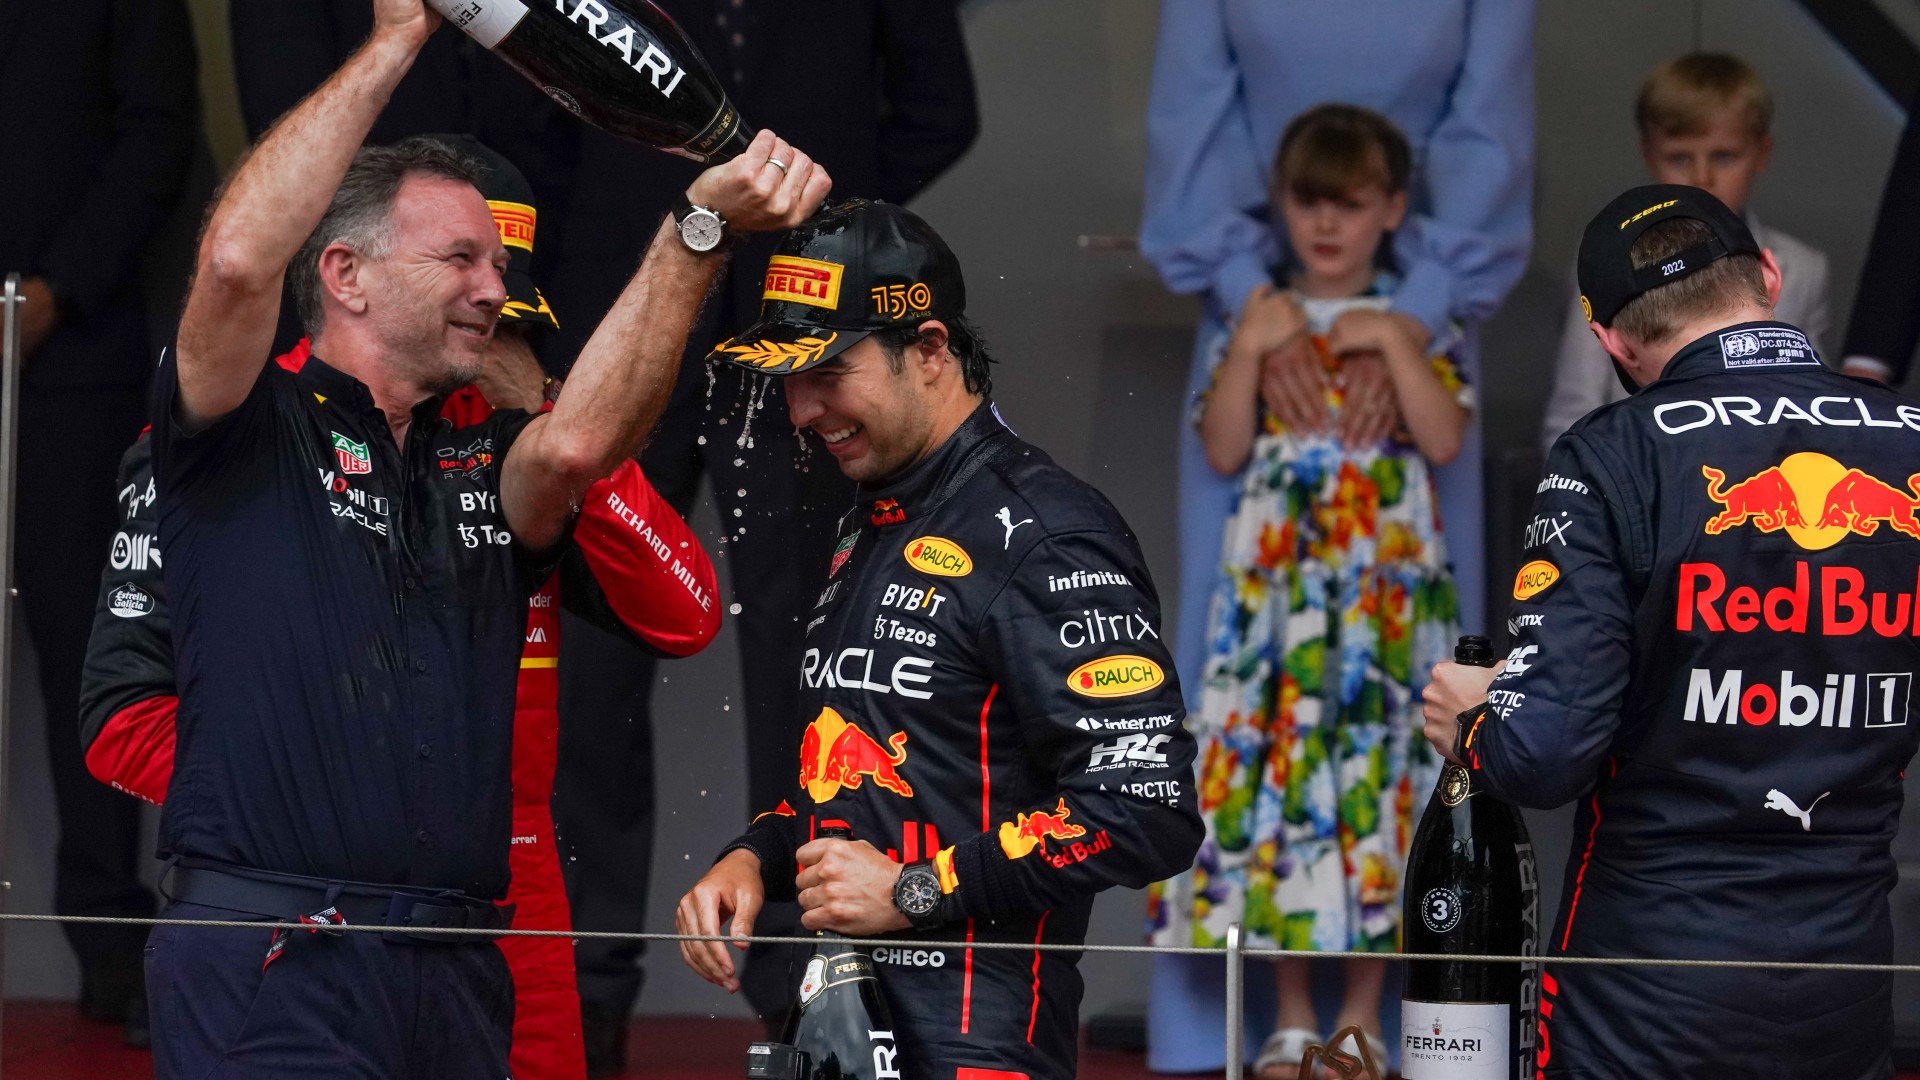 Monaco Grand Prix 2022 results: Perez takes win as Leclerc falters in  hectic Monte Carlo race